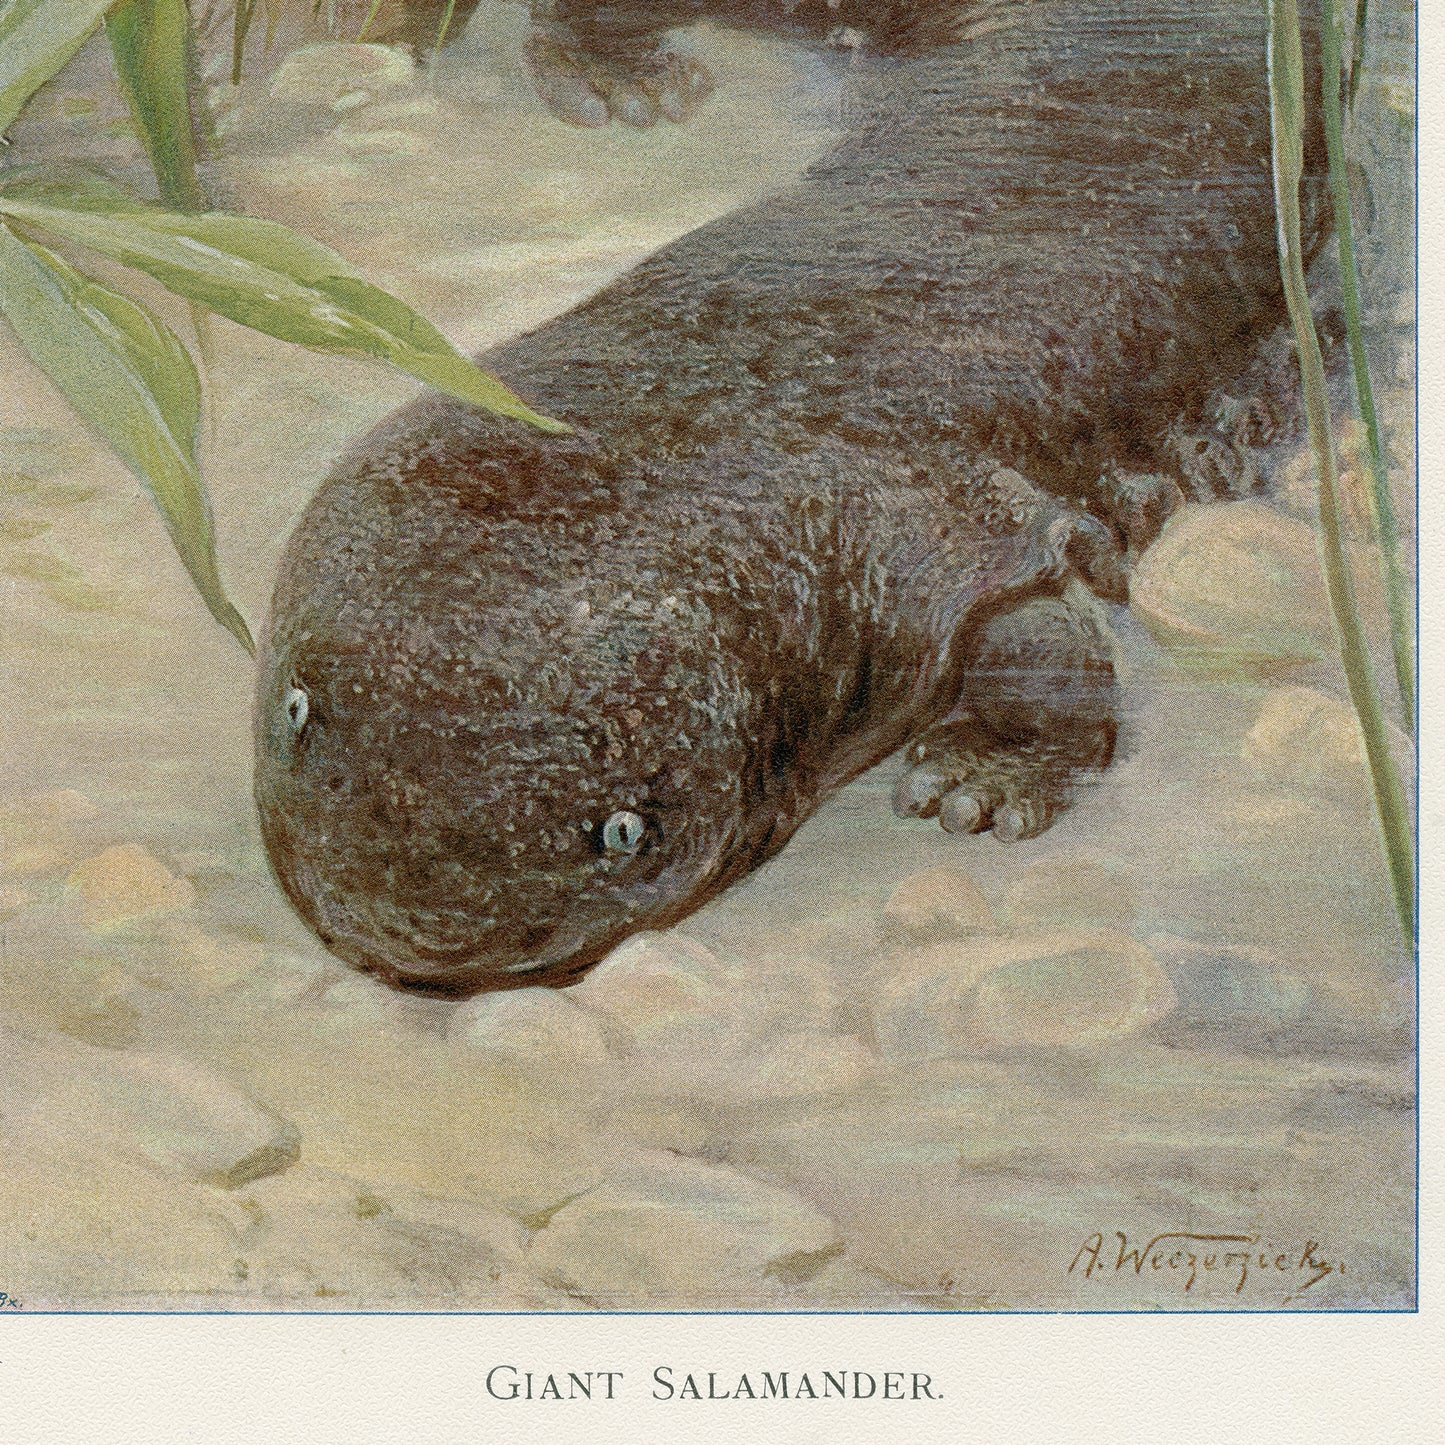 1916 Giant Salamander Print by A. Weczerzick